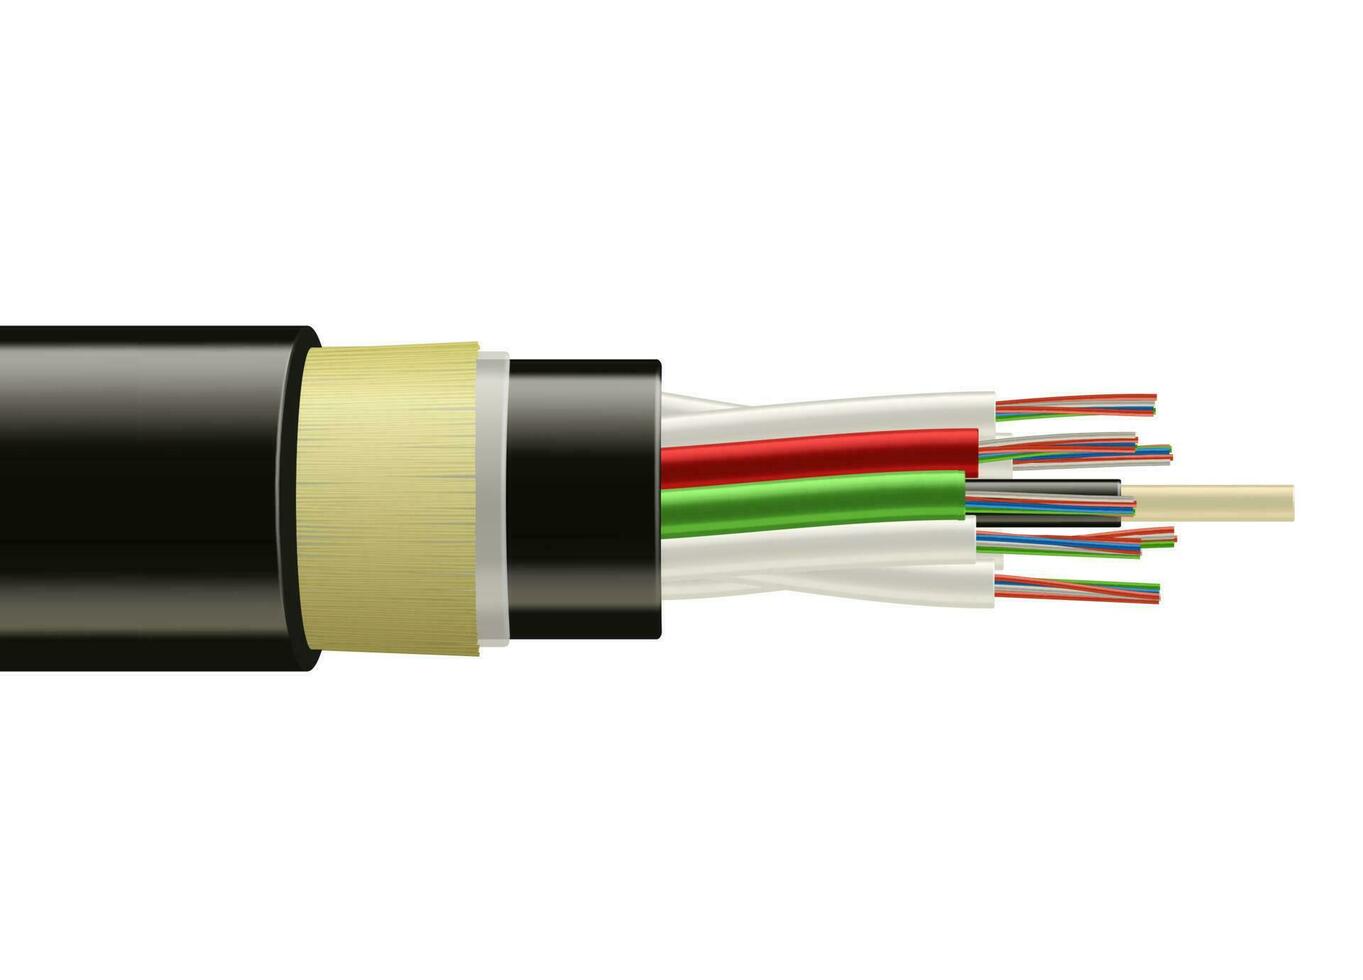 fiber optisk tajt kabel, bredband internet kabel- vektor